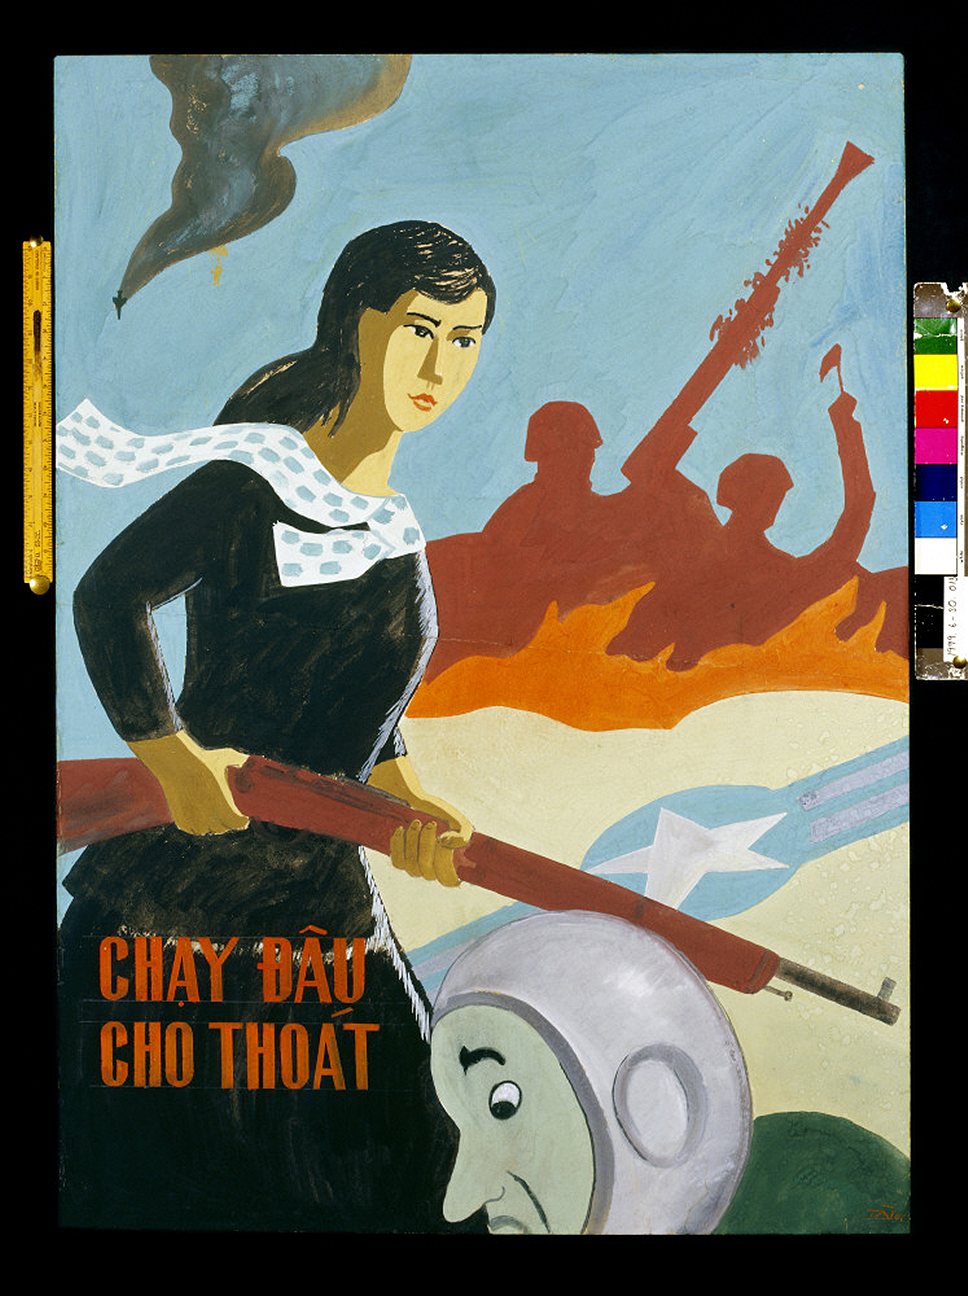 Вьетнамский агитационный плакат: молодая женщина держит винтовку, преследуя американского летчика, 1967 год